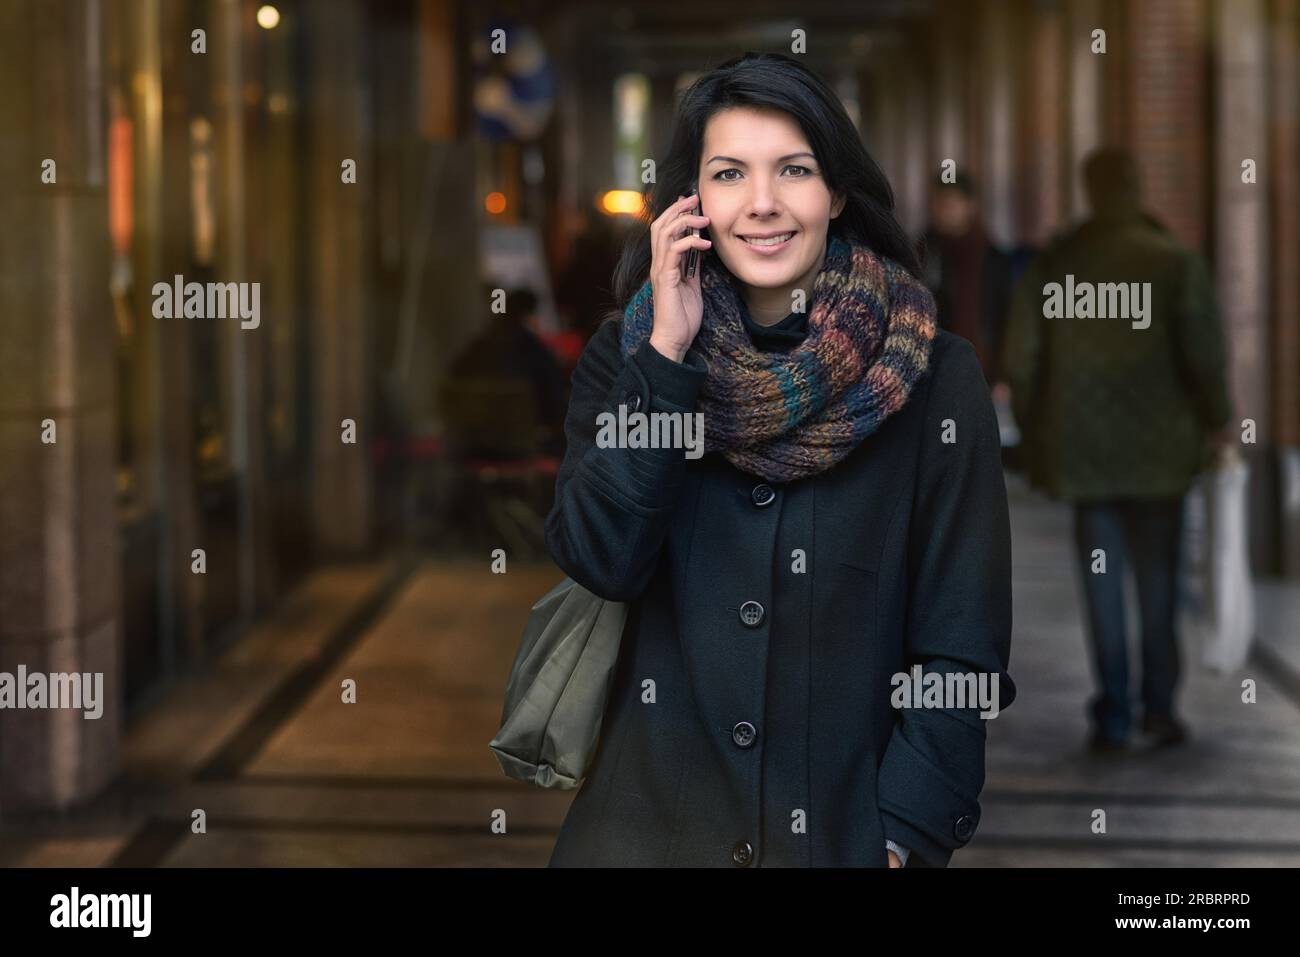 Lächelnde junge Frau im Herbst Mode telefonieren während des Gehens in der Stadt Stockfoto